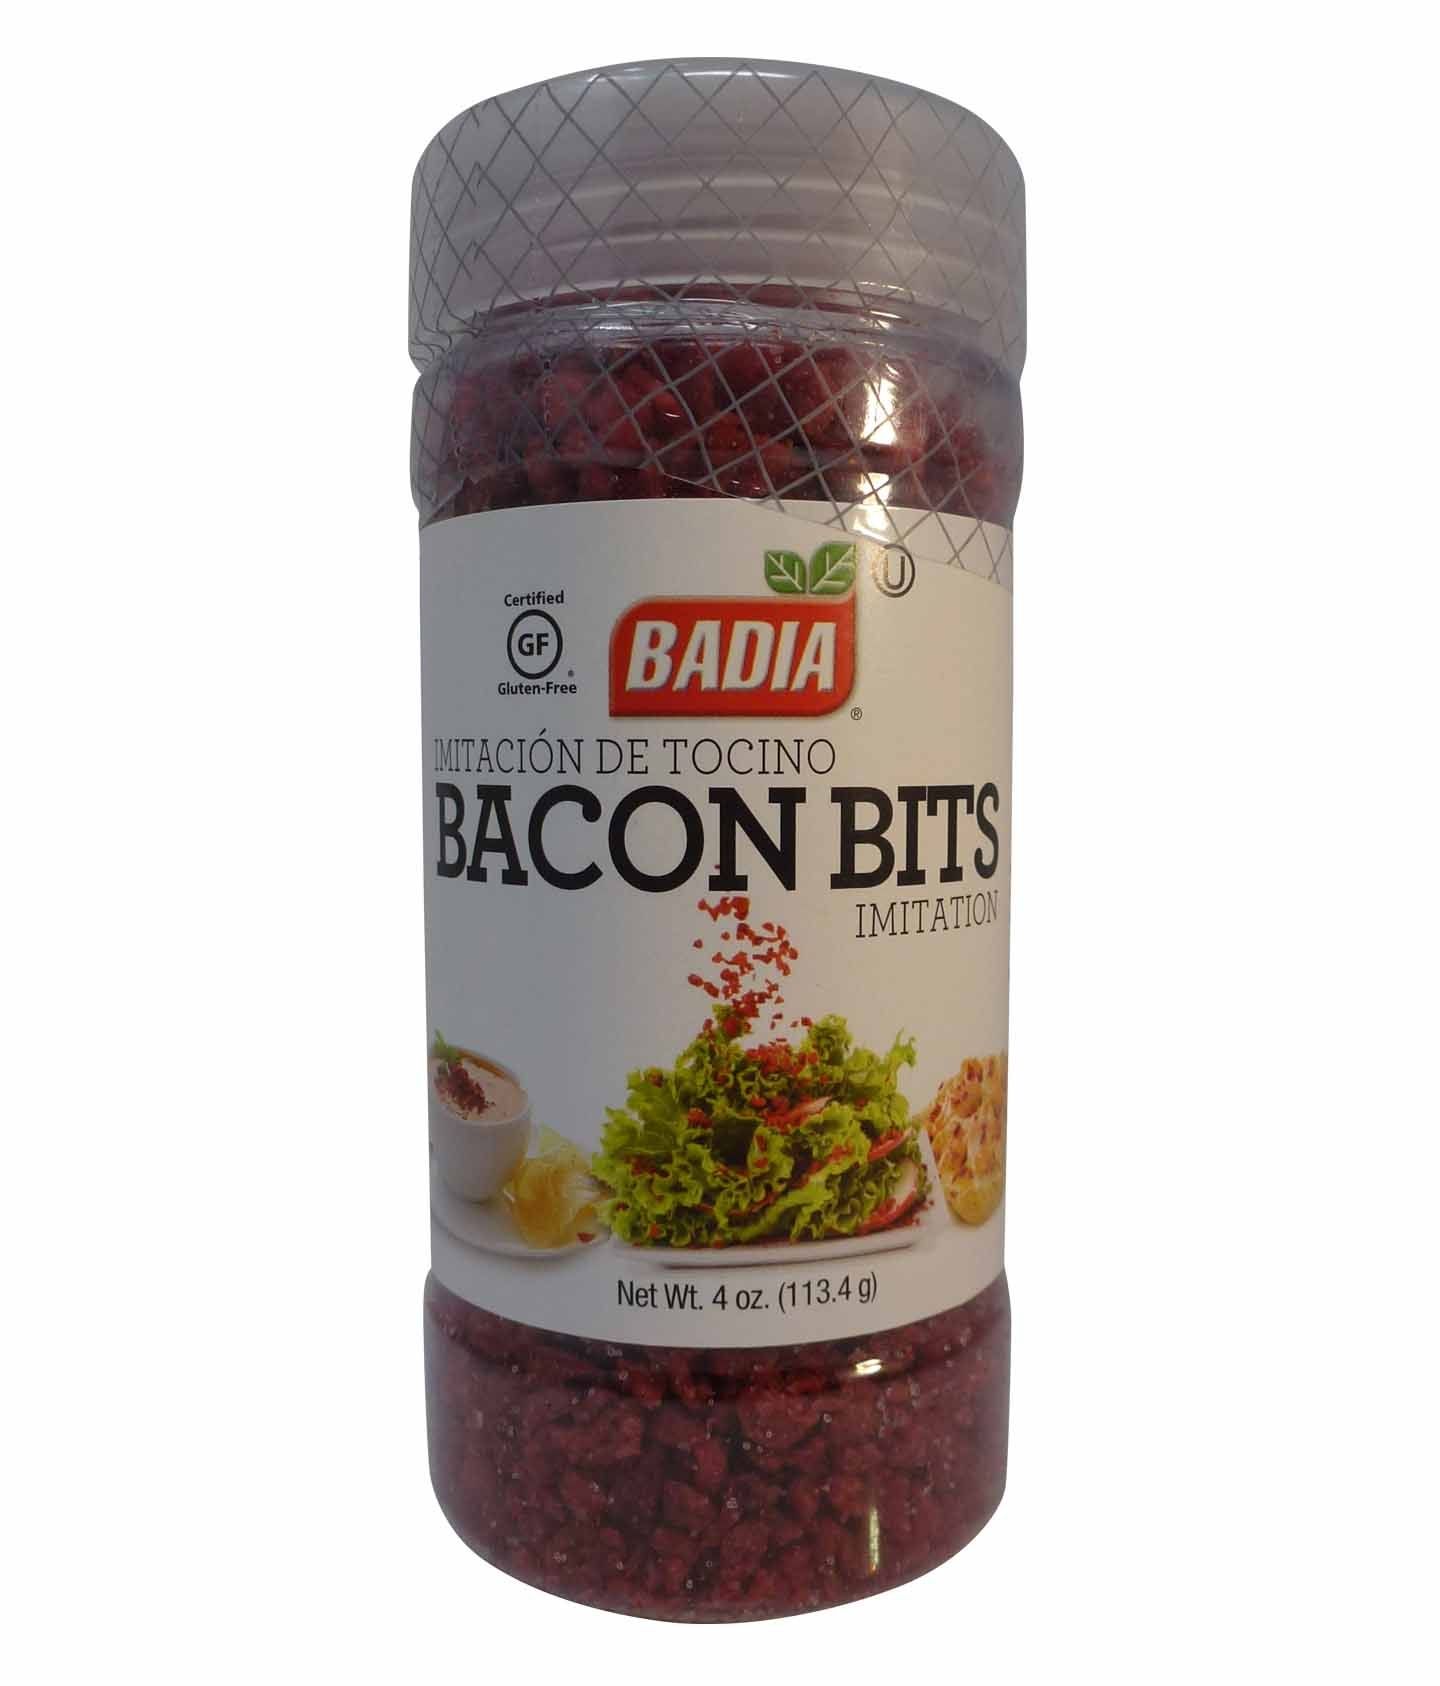 https://www.tasteamerica.co.uk/media/catalog/product/cache/b78bd81bd14f73c831b1cdd2bb6b6fb0/b/a/badia_bacon_bits_imitation_bacon_113.4g_-_033844004125_1.jpg